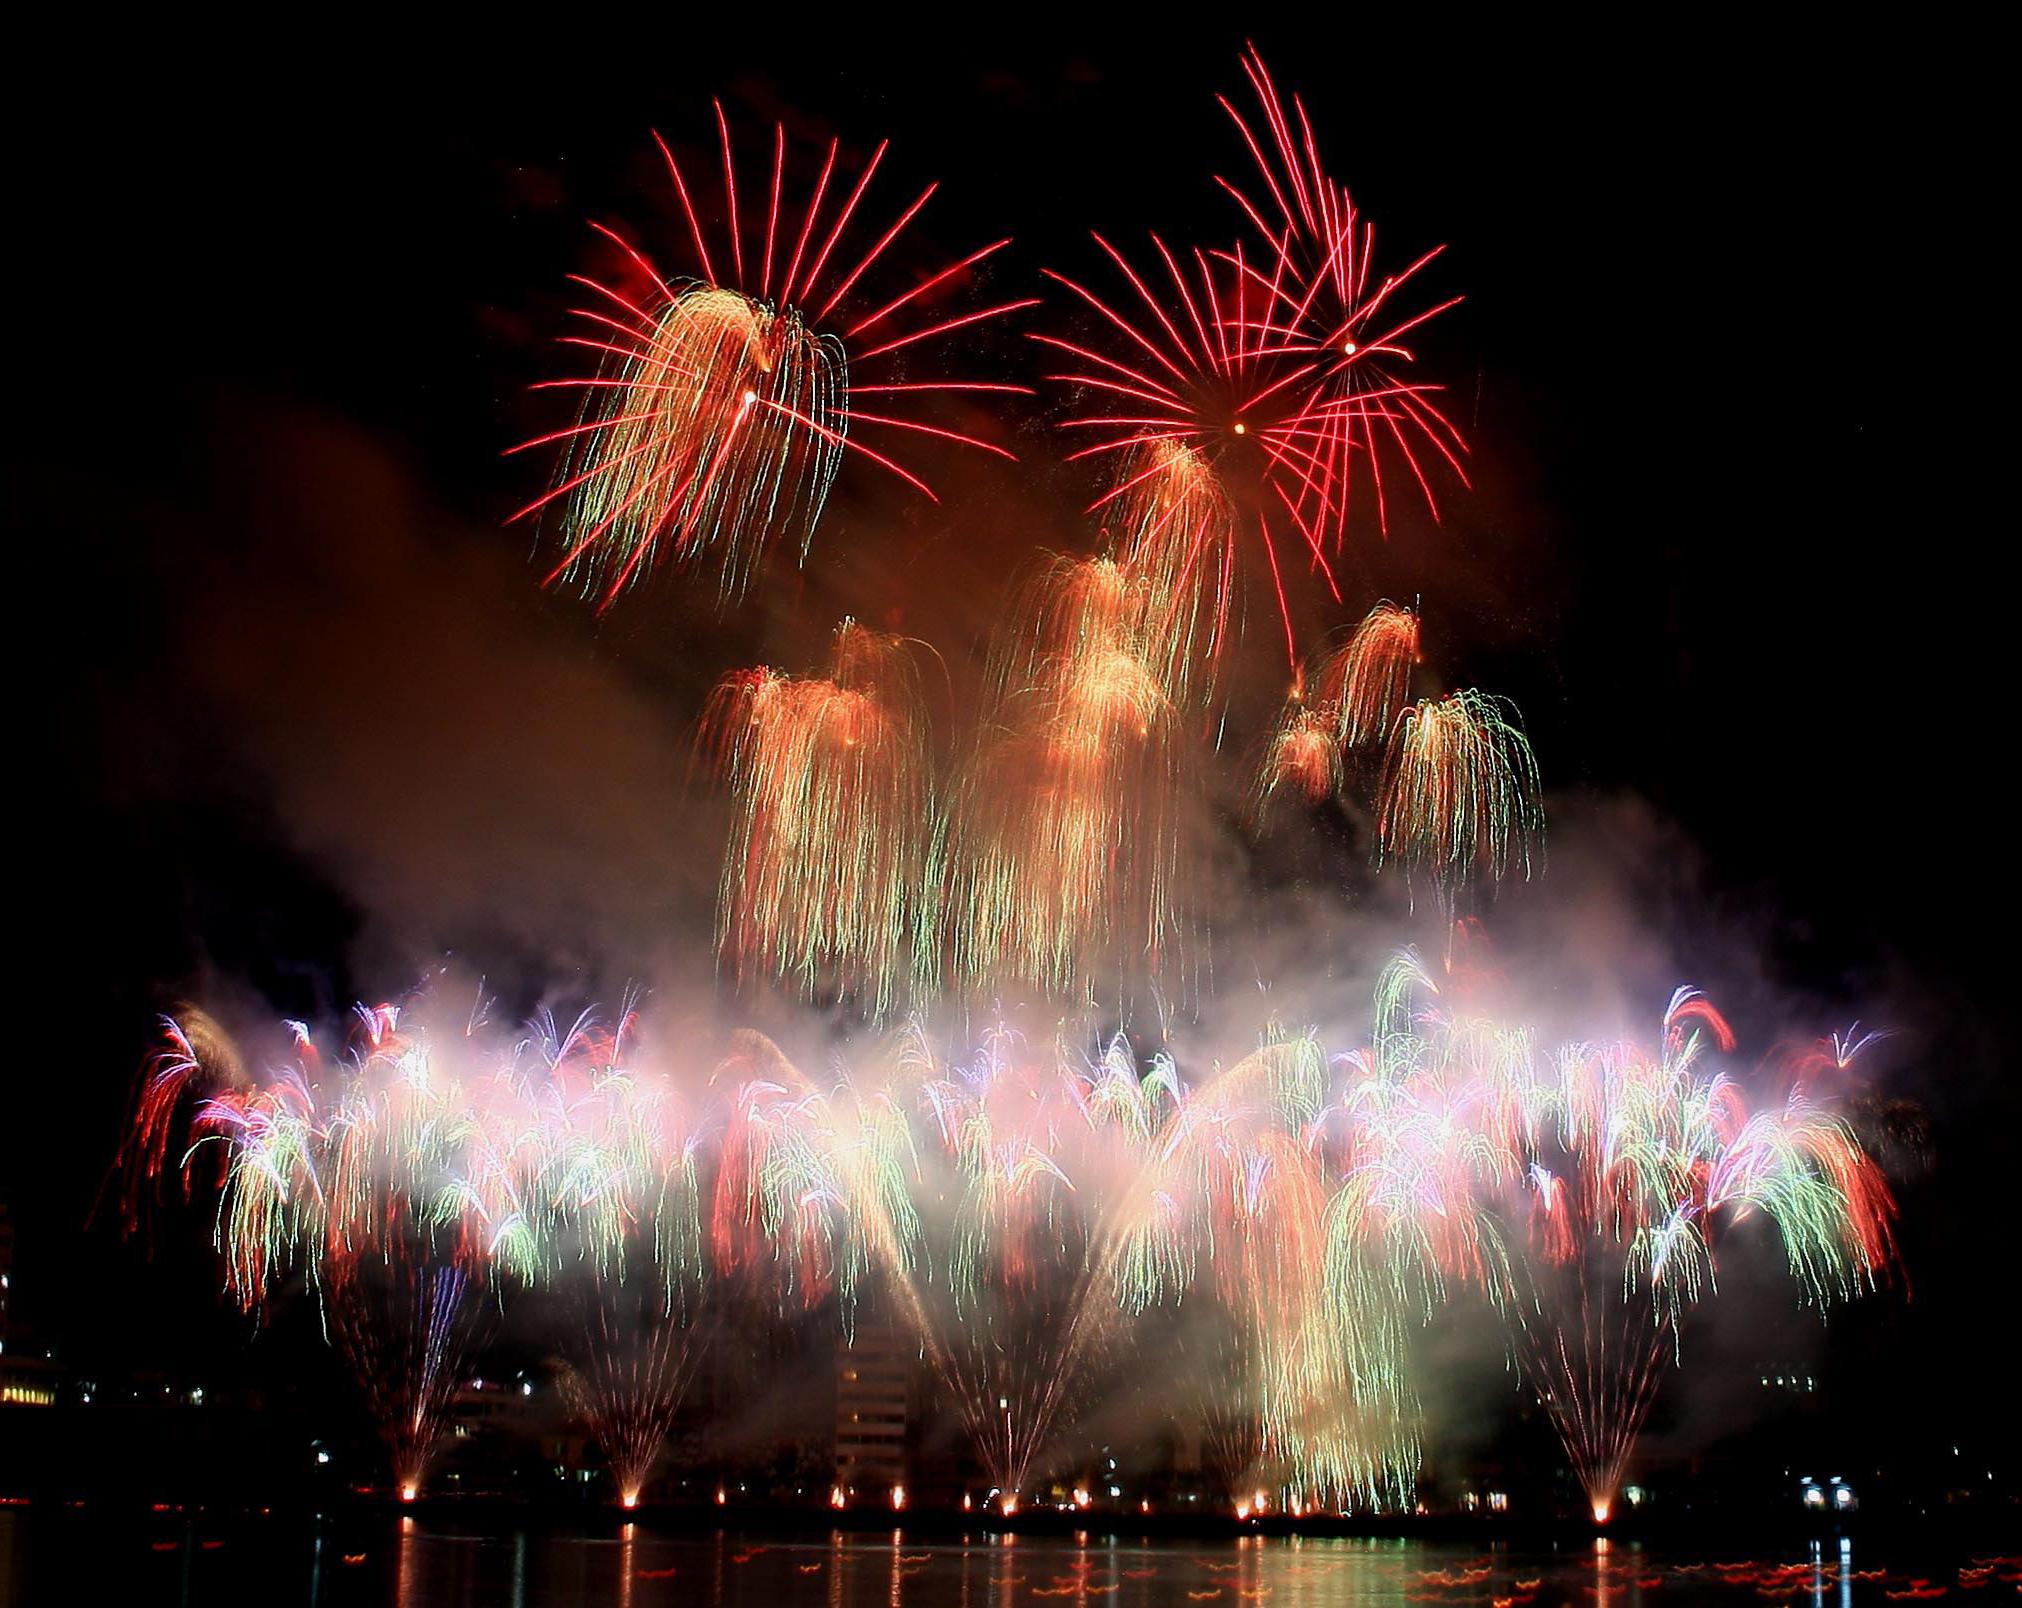 Thống nhất tên gọi cho cuộc thi Bắn pháo hoa quốc tế Đà Nẵng năm 2012 là “Cuộc thi trình diễn pháo hoa quốc tế Đà Nẵng 2012”.